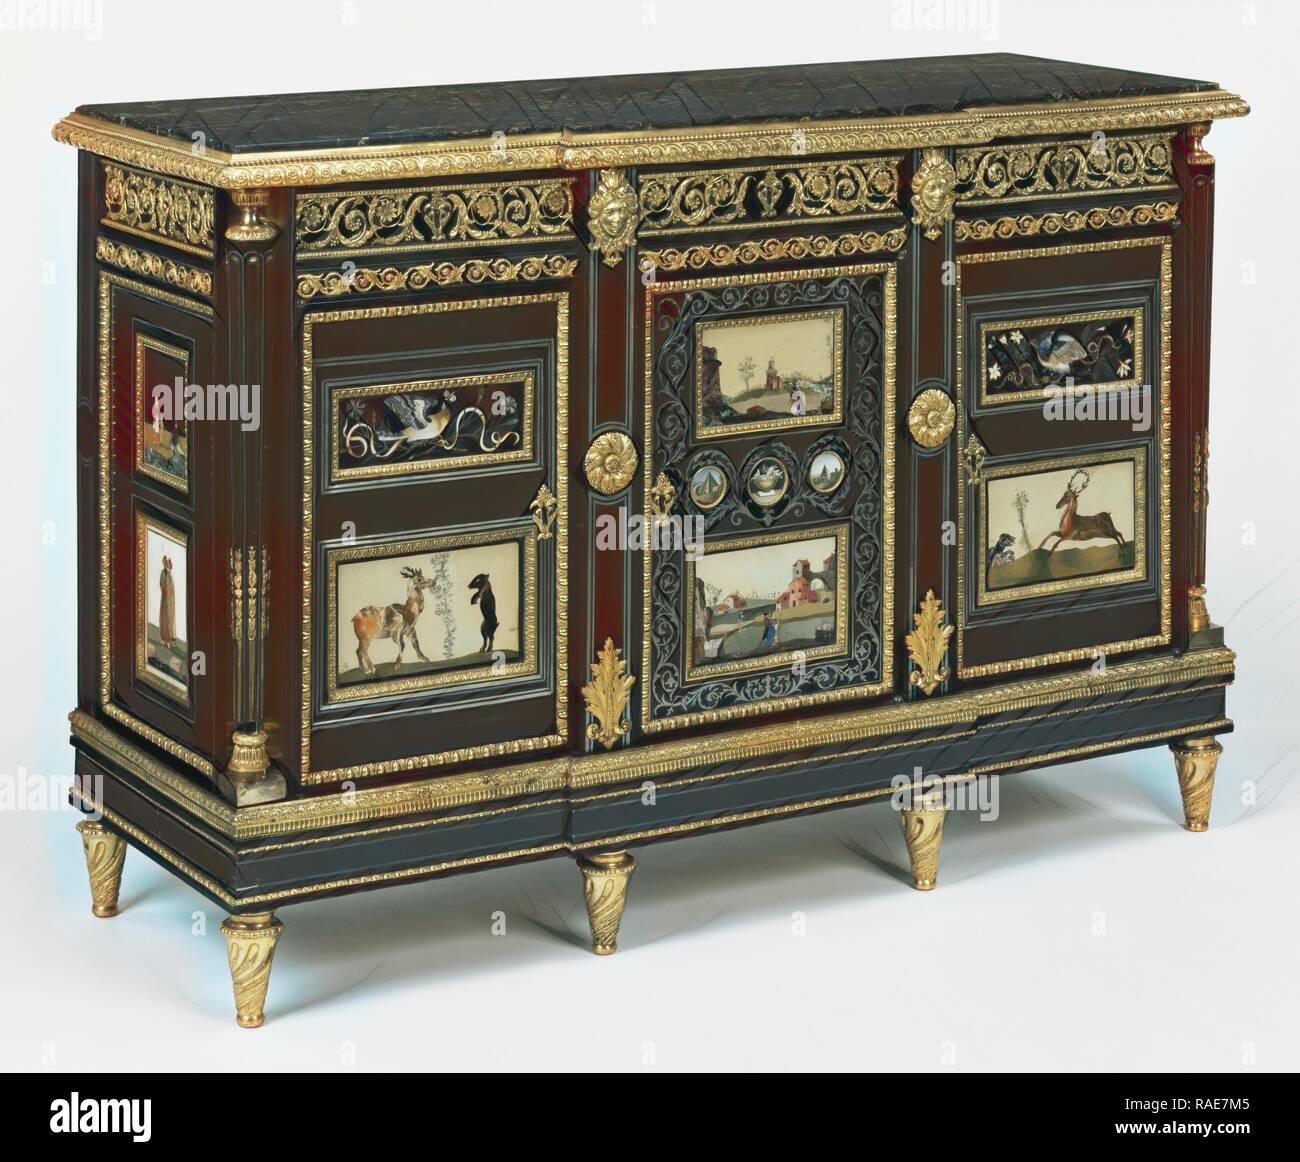 L'un d'une paire d'armoires, attribué à Adam Weisweiler (Français, 1744 - 1820 (1778) maître), Paris, France, à propos de repensé Banque D'Images